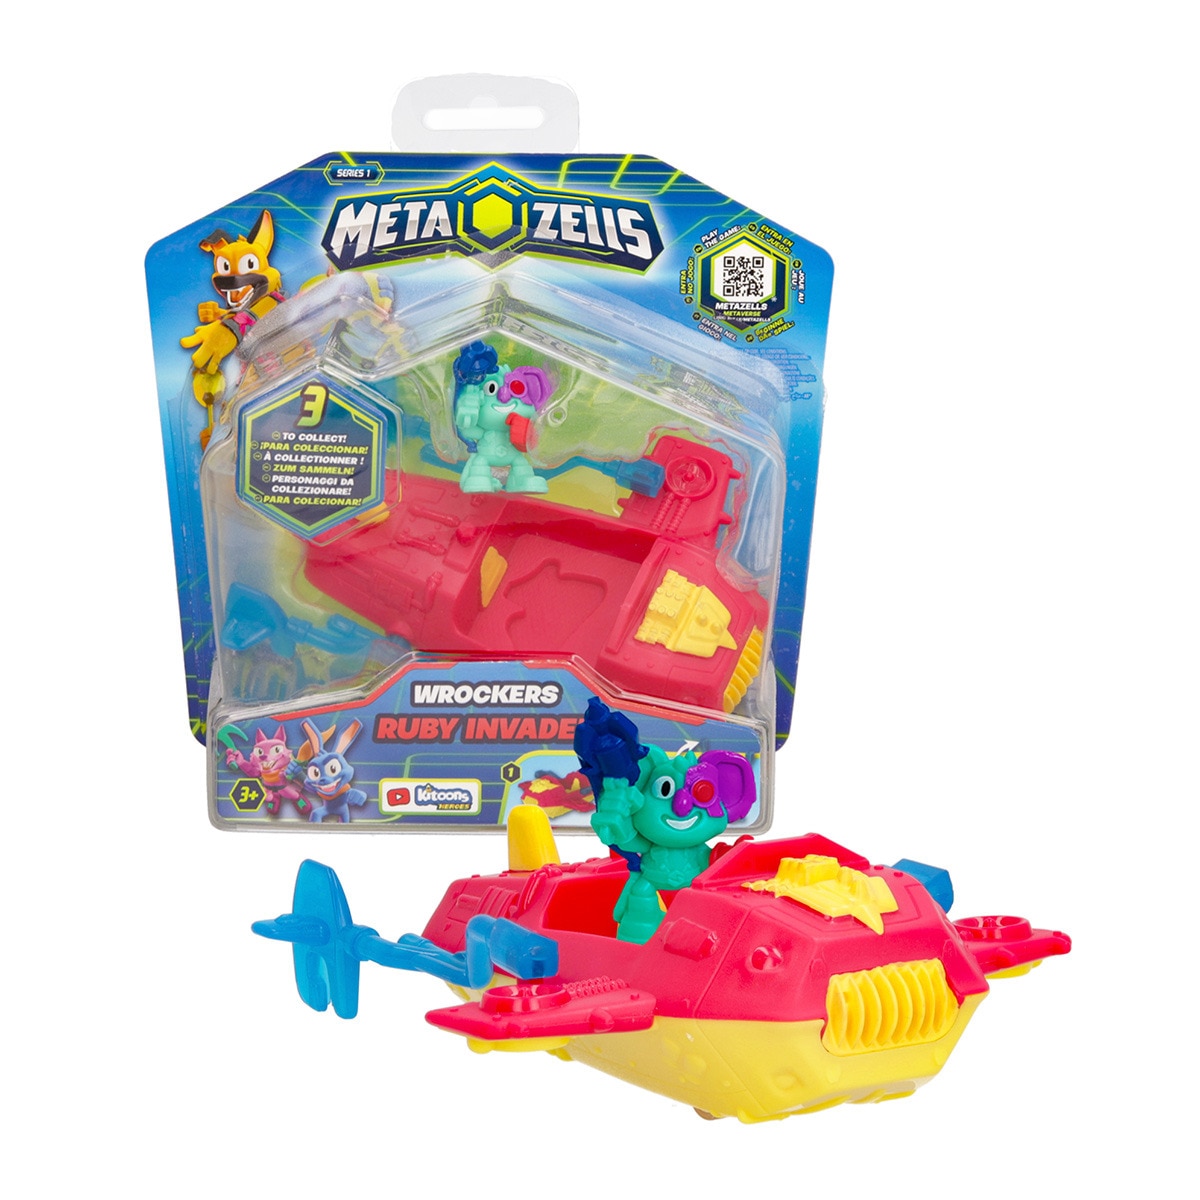 METAZELLS - Avión de juguete Ruby Invader modelo surtido Vehicle Metazells.